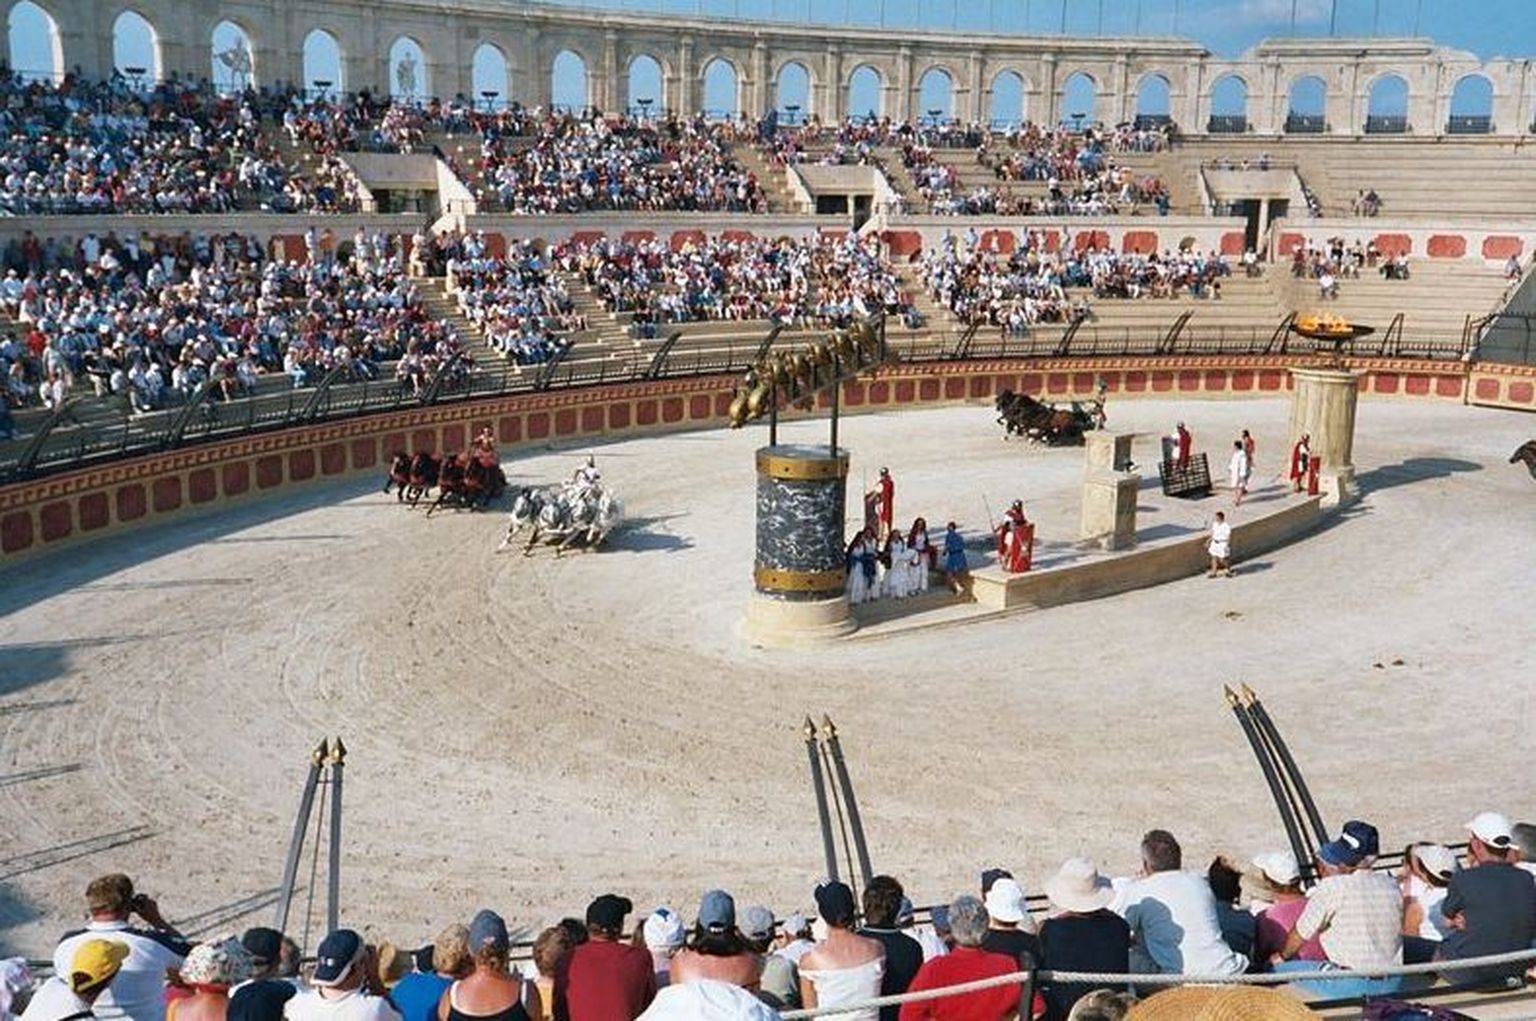 Sellised võisid välja näha Vana-Rooma kaarikuajamise võistlused. Fotol võiduajamiste rekonstruktsioon Prantsusmaal Puy du Fous